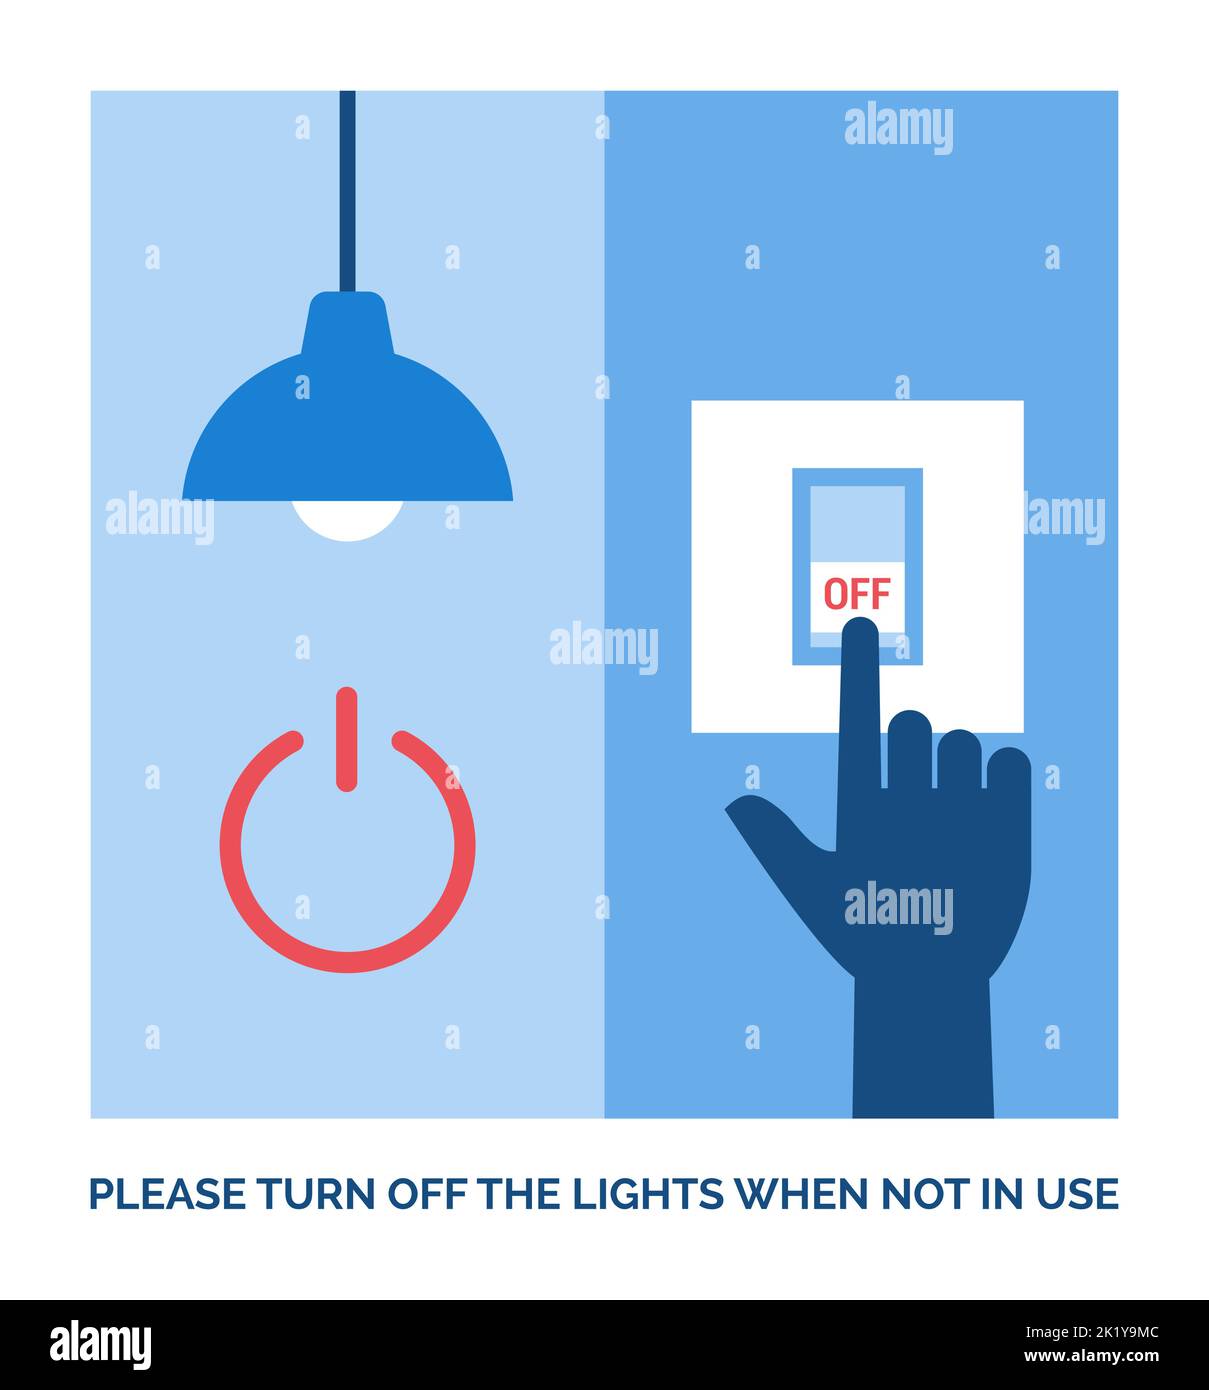 Mode de vie écologique : éteignez les lumières lorsque vous ne les utilisez pas Illustration de Vecteur